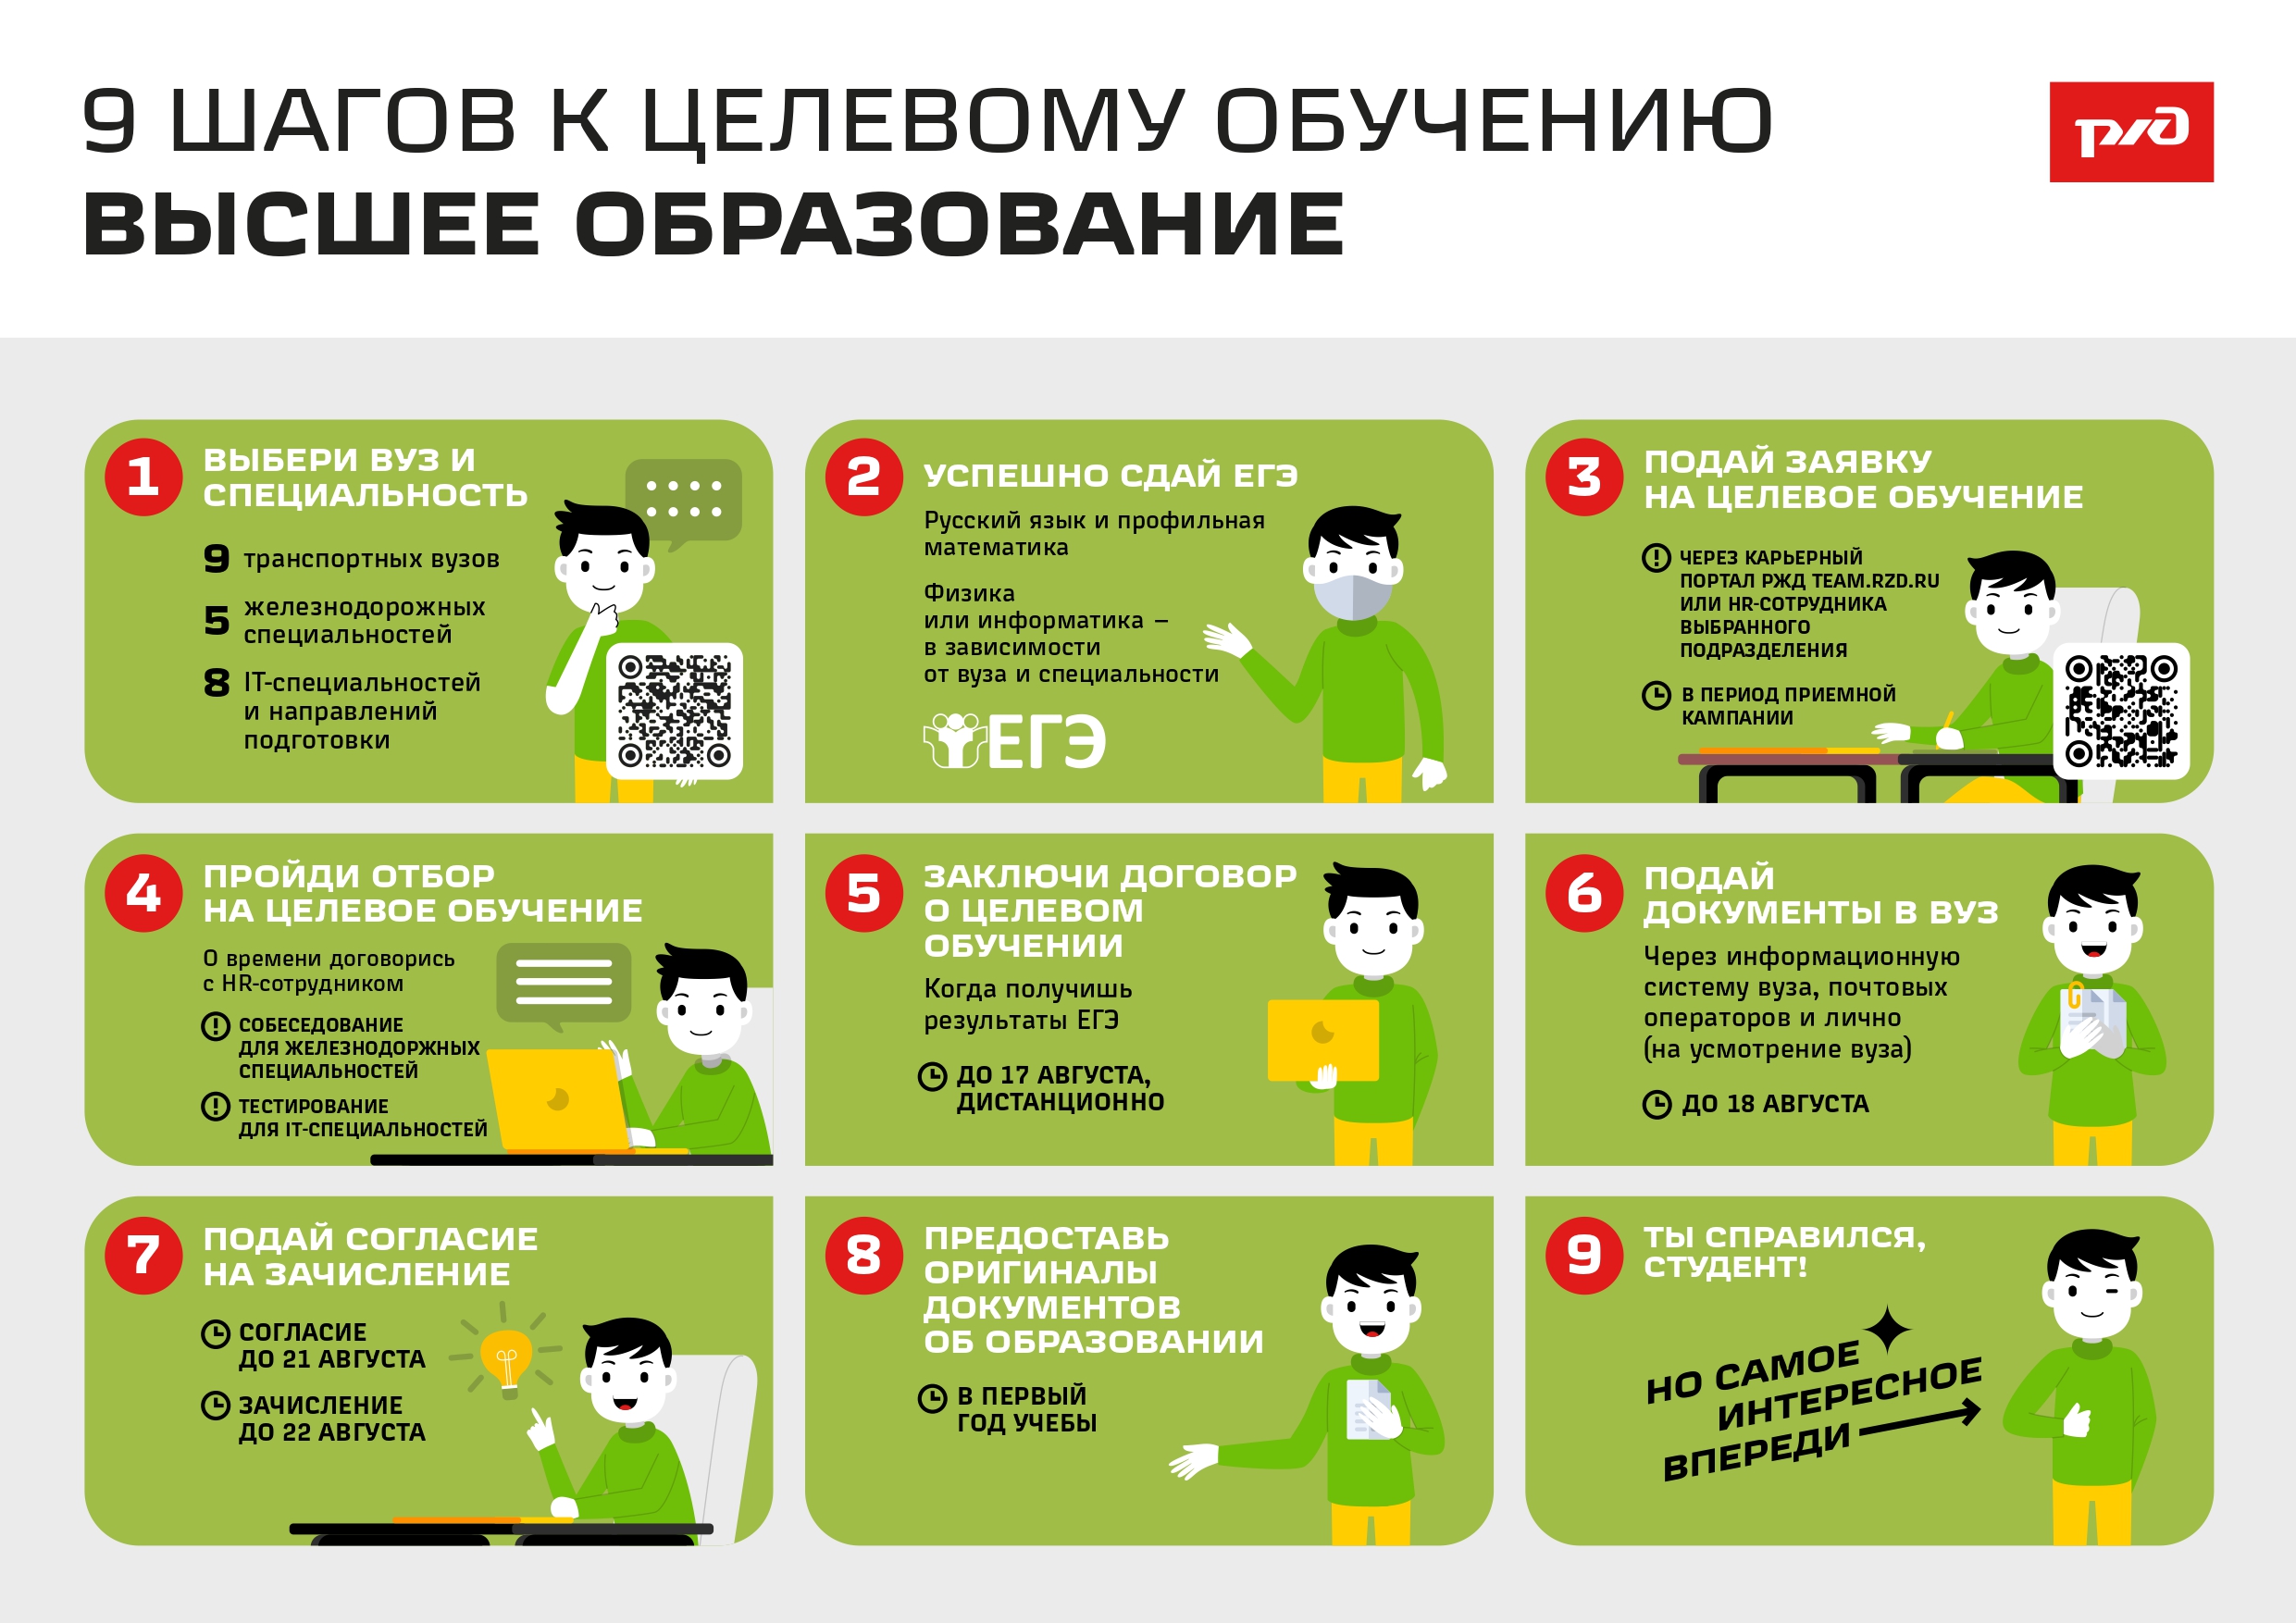 Белгородская дистанция сигнализации, централизации и блокировки филиала ОАО «РЖД» приглашает на целевое обучение.